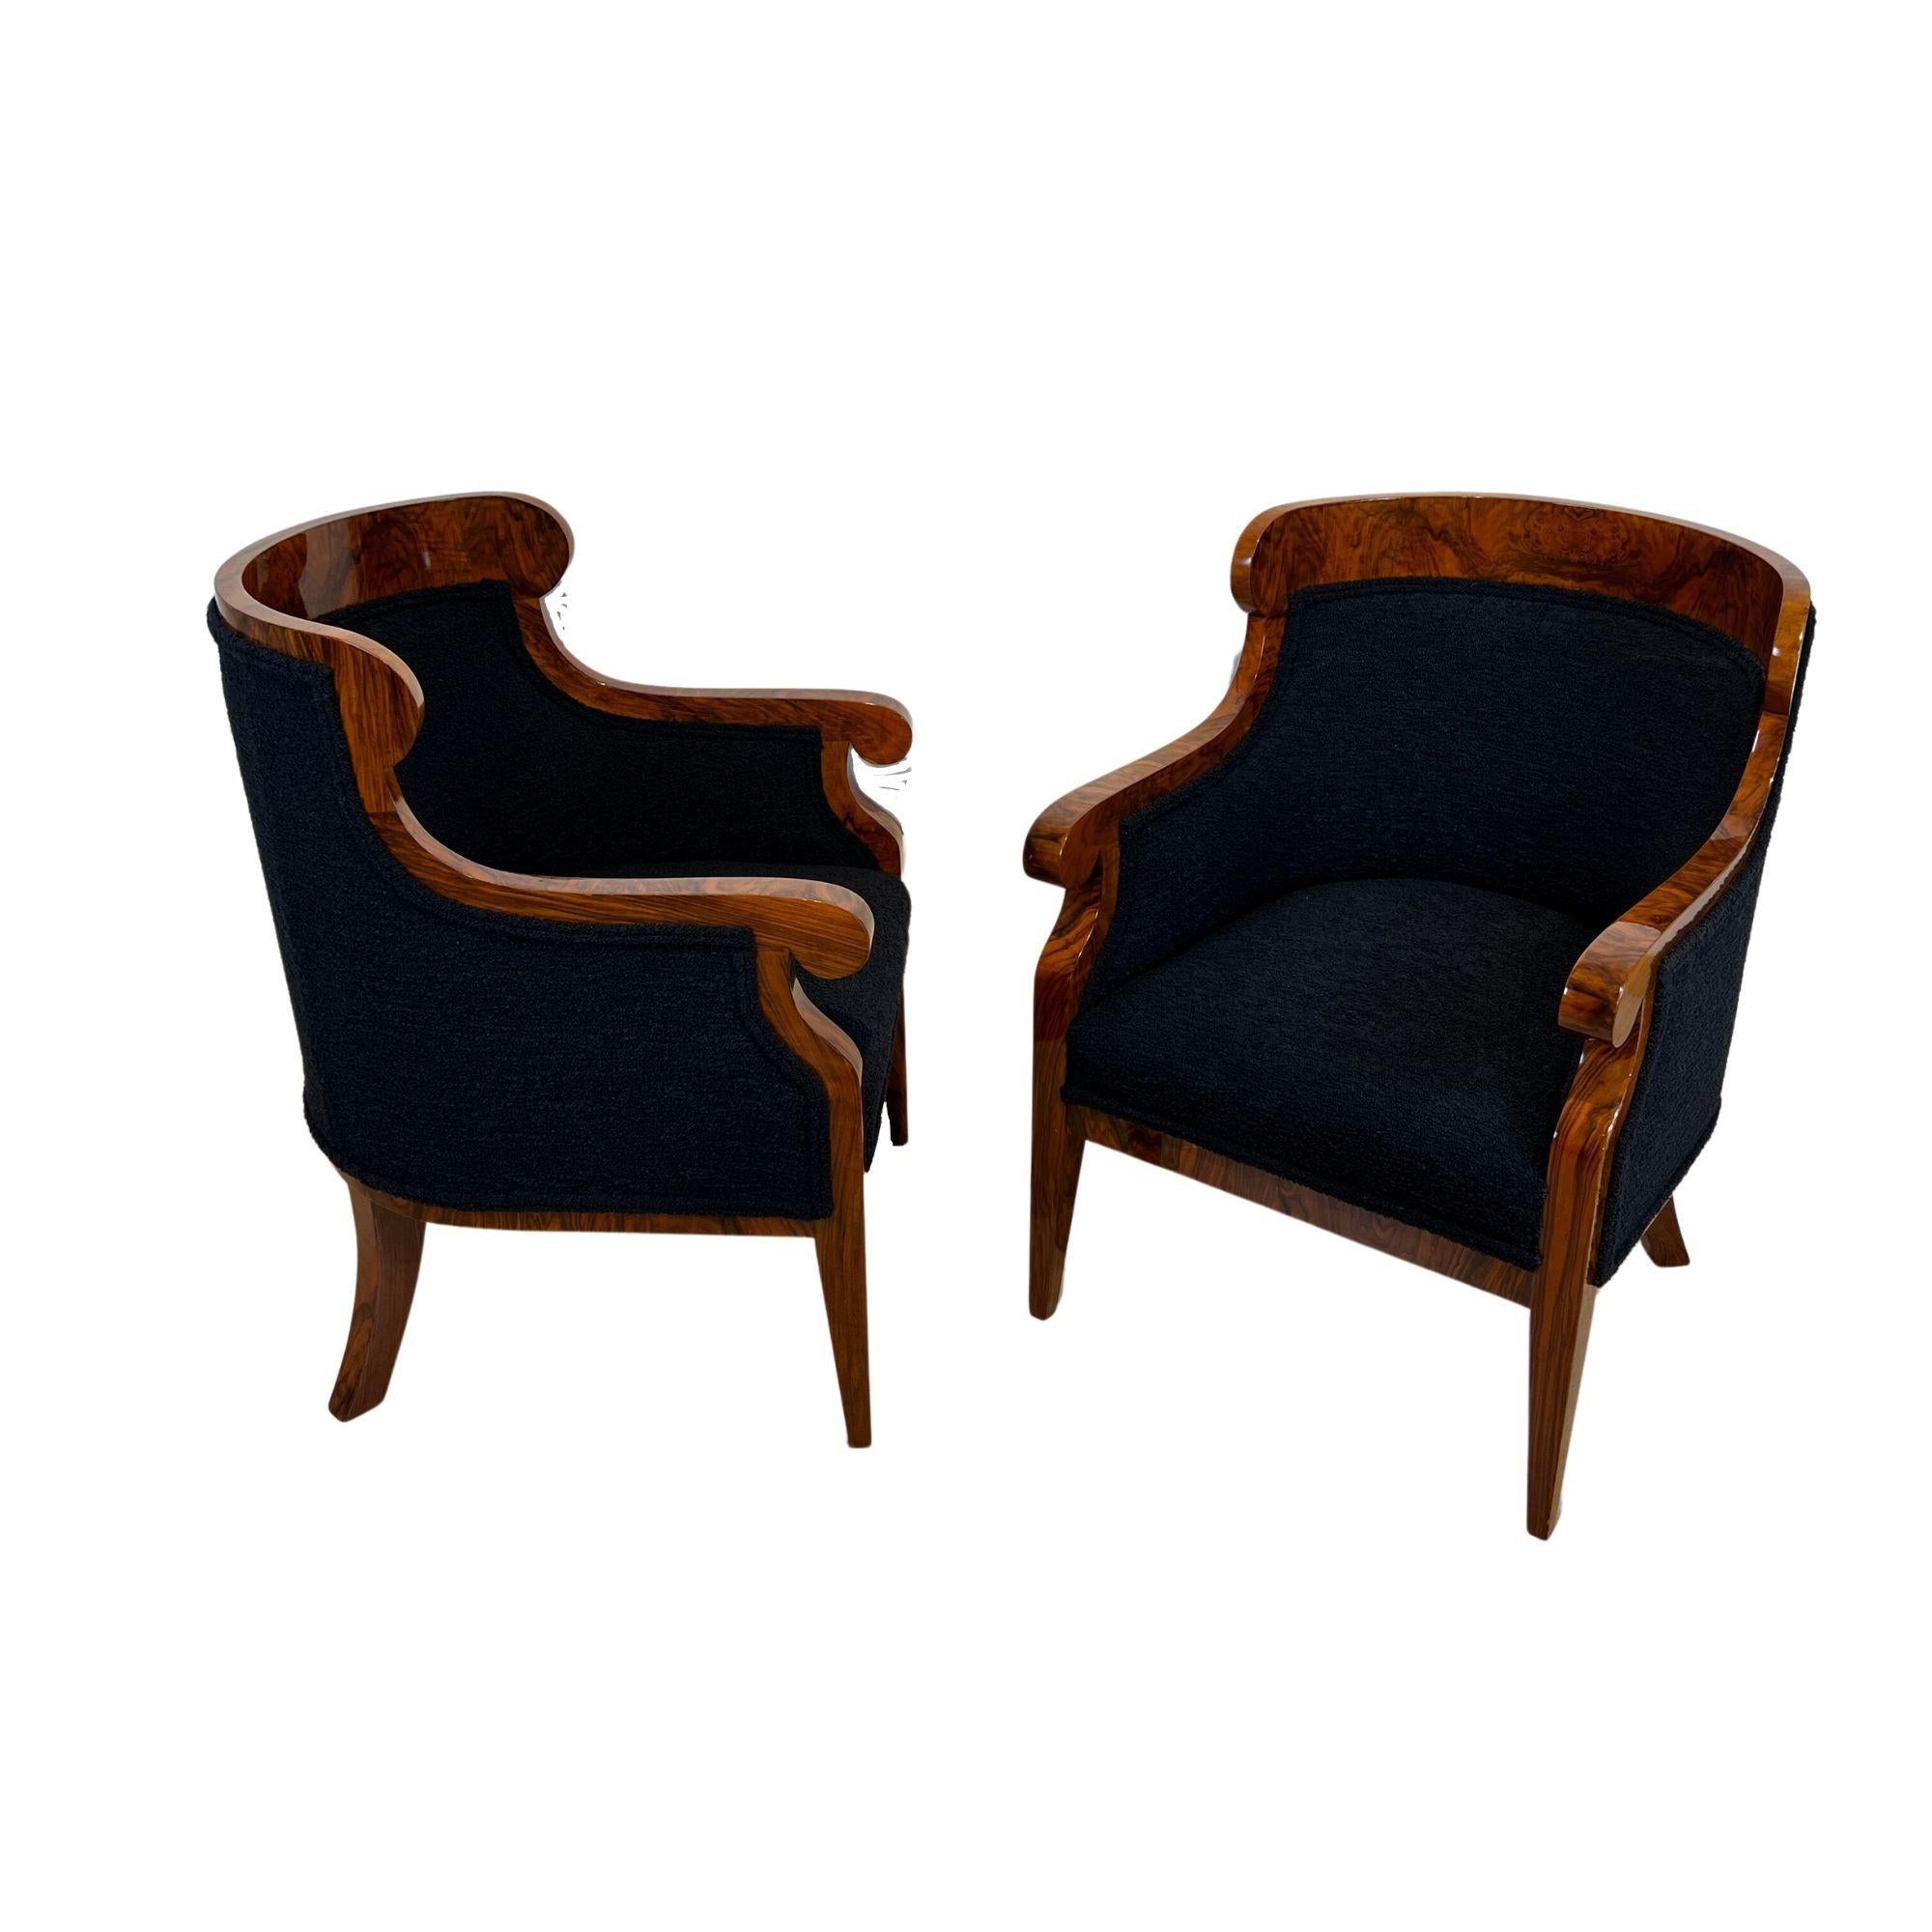 Elégante paire de chaises néoclassiques Biedermeier Bergere d'Autriche, Vienne vers 1850.
Placage de noyer sur bois tendre et noyer massif.
Pieds coniques à section carrée. Restauré et poli à la main à la gomme-laque.
Nouveau revêtement en tissu